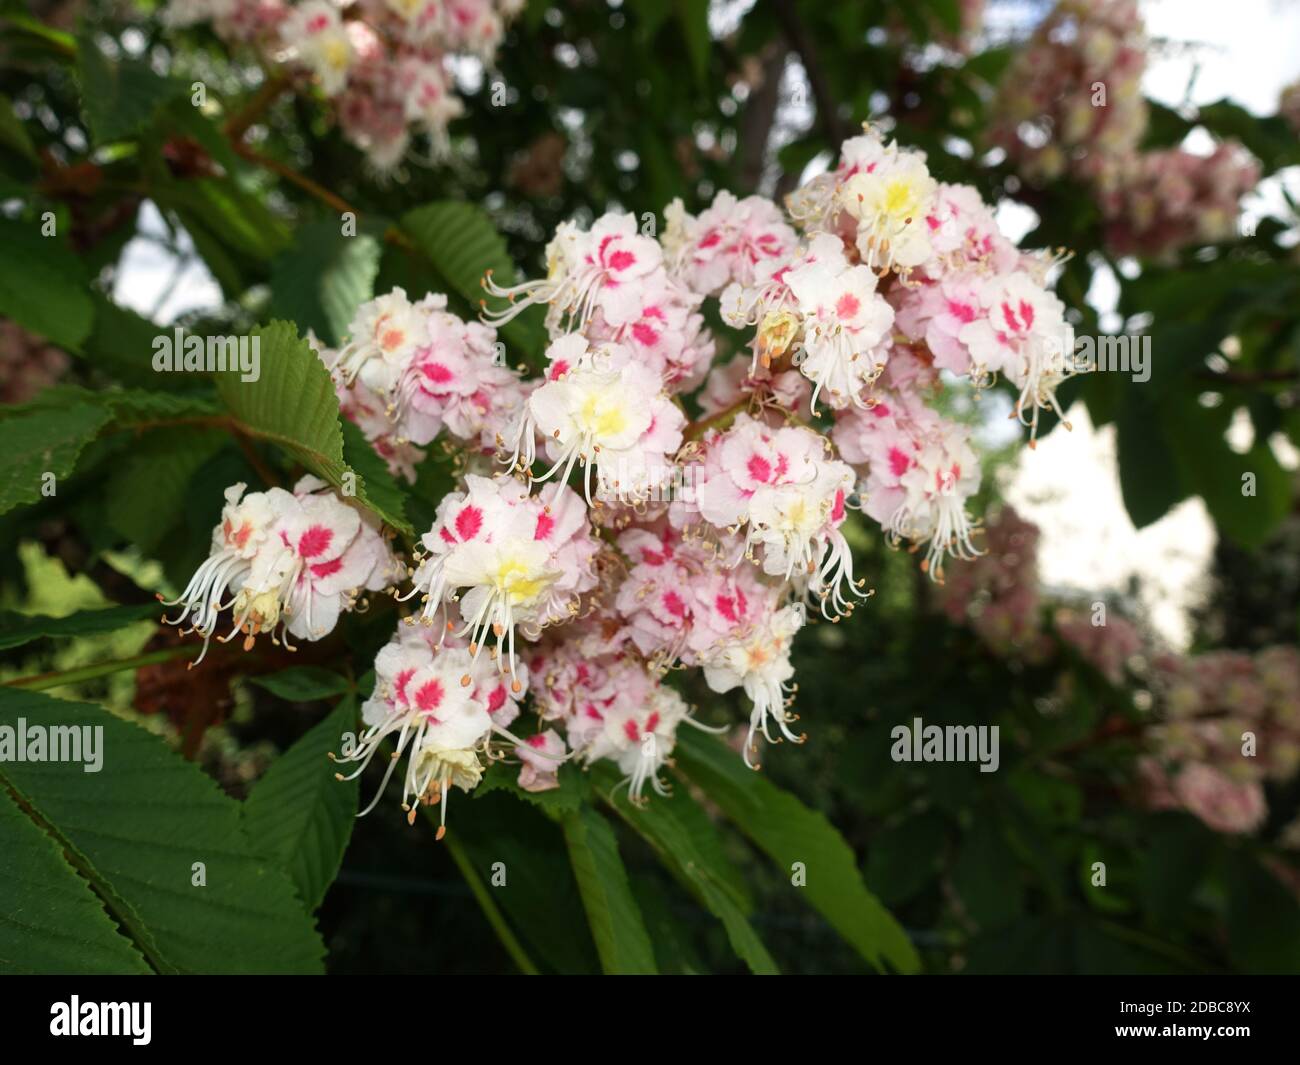 Gewöhnliche Rosskastanie (Aesculus hippocastanum) oder Weiße Rosskastanie - Blütenstand, Weilerswist, Nordrhein-Westfalen, Deutschland Stock Photo